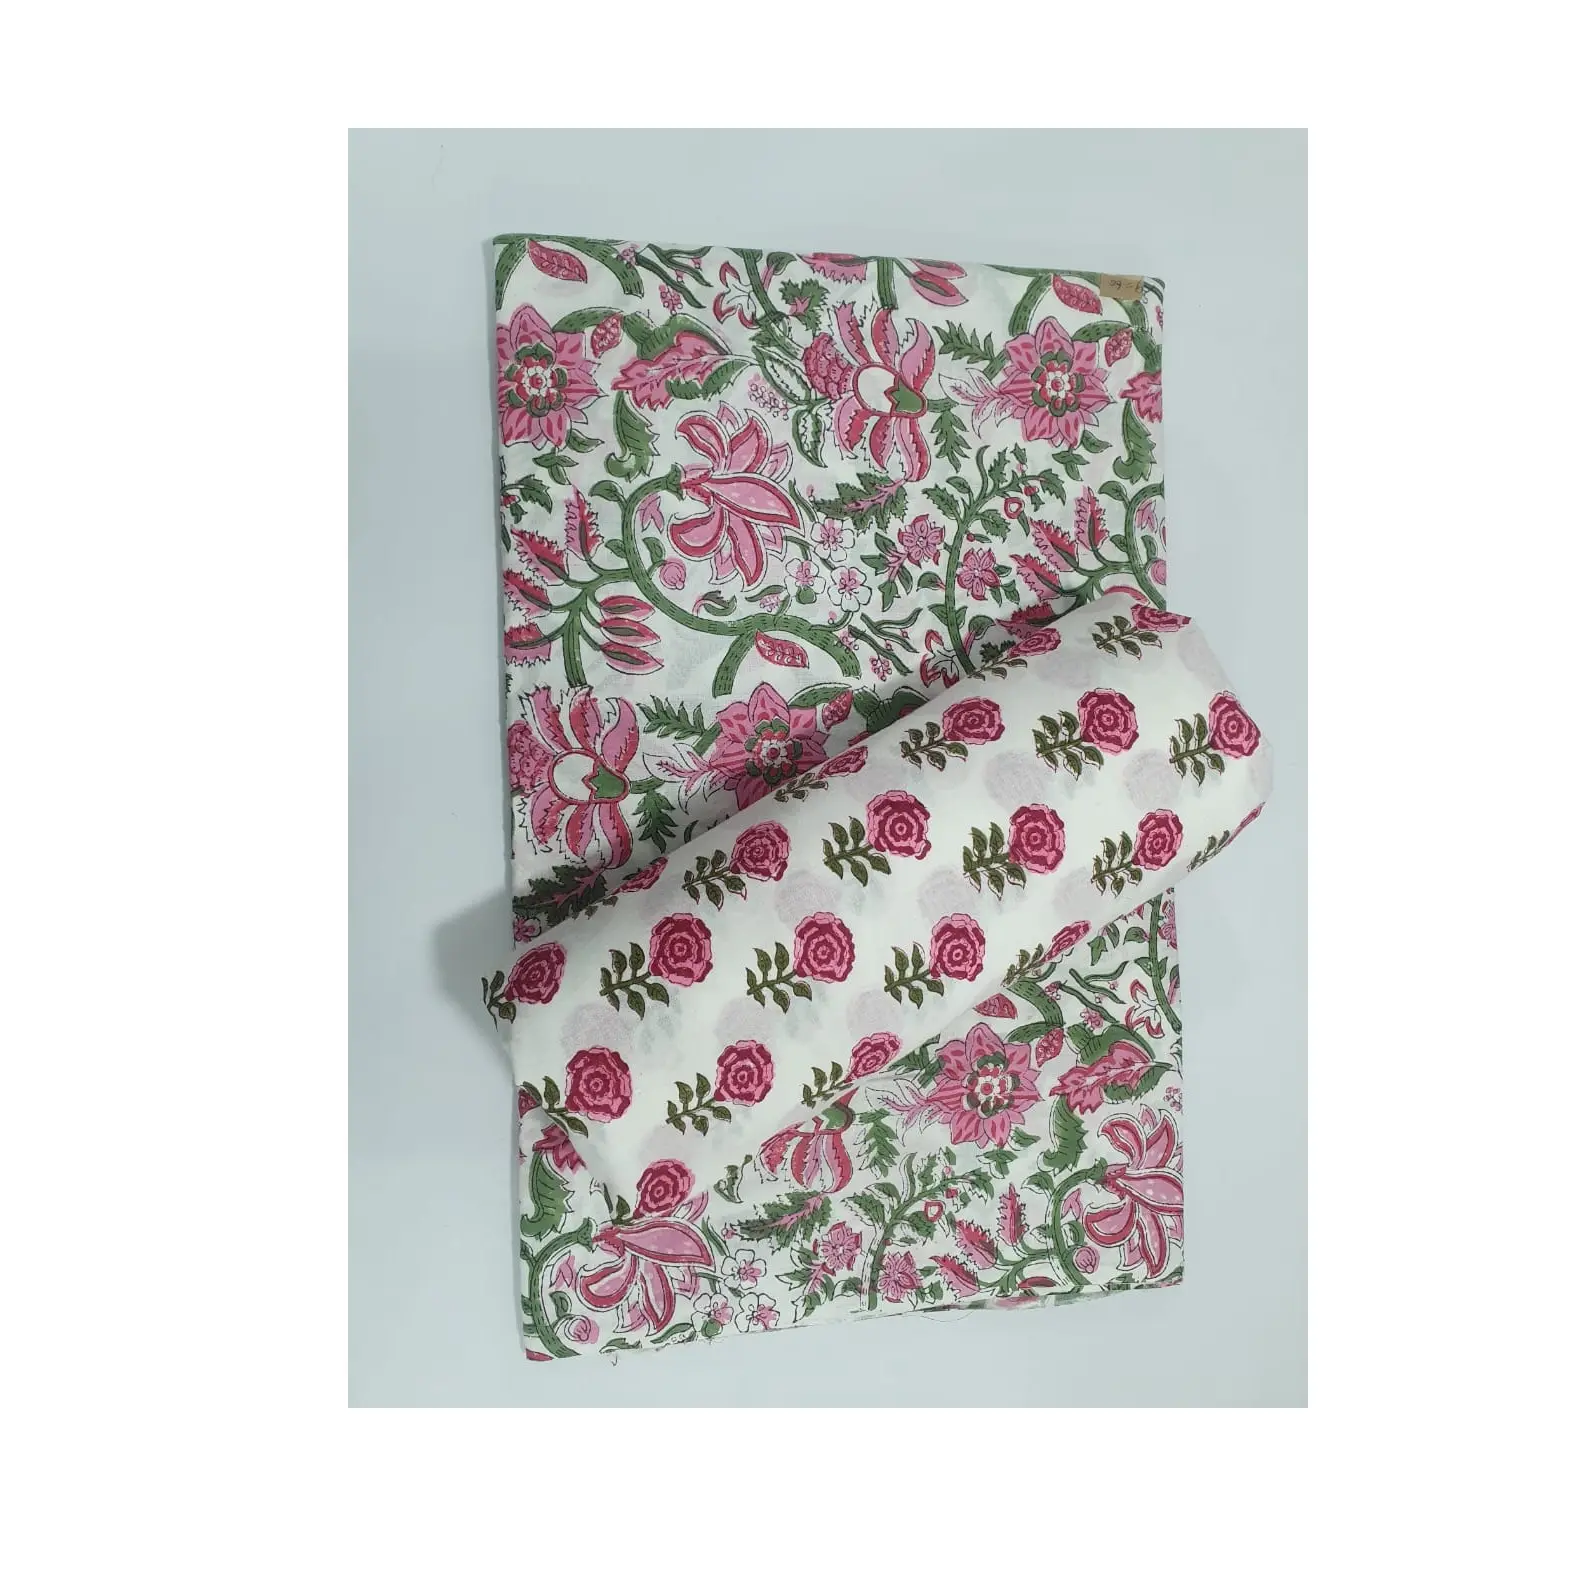 Экспортная качественная хлопчатобумажная ткань с цветочным принтом для изготовления женских платьев, таких как костюм сальвар и сари из Индии